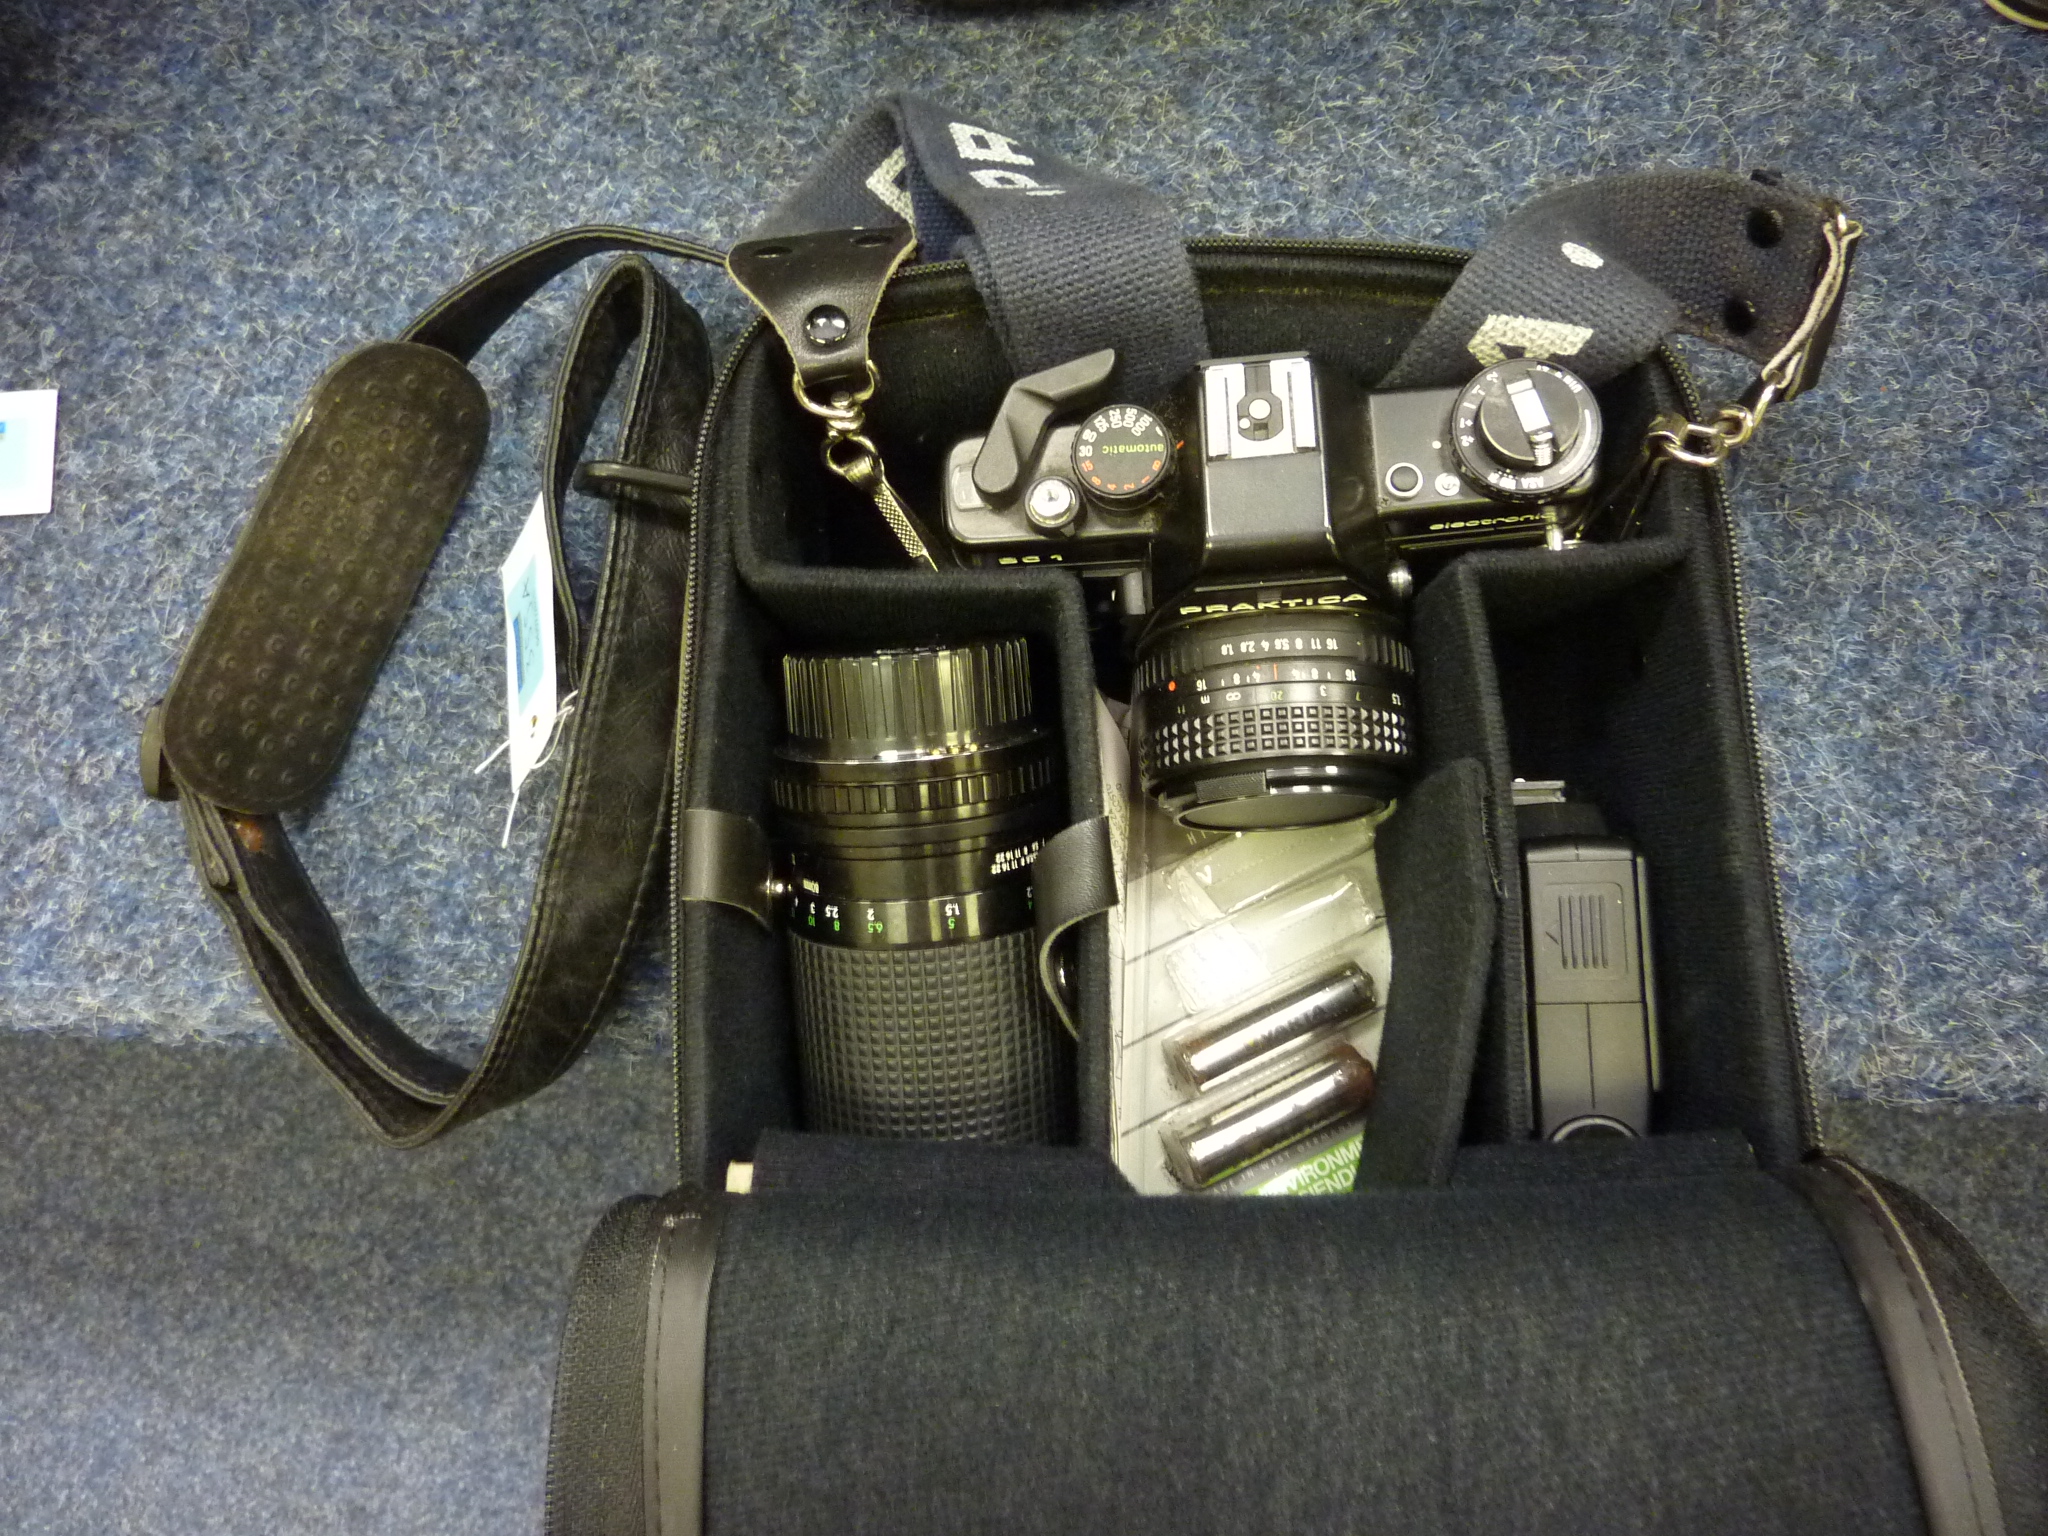 Praktica BC1 camera and Prakticar Pentacon lens etc cased